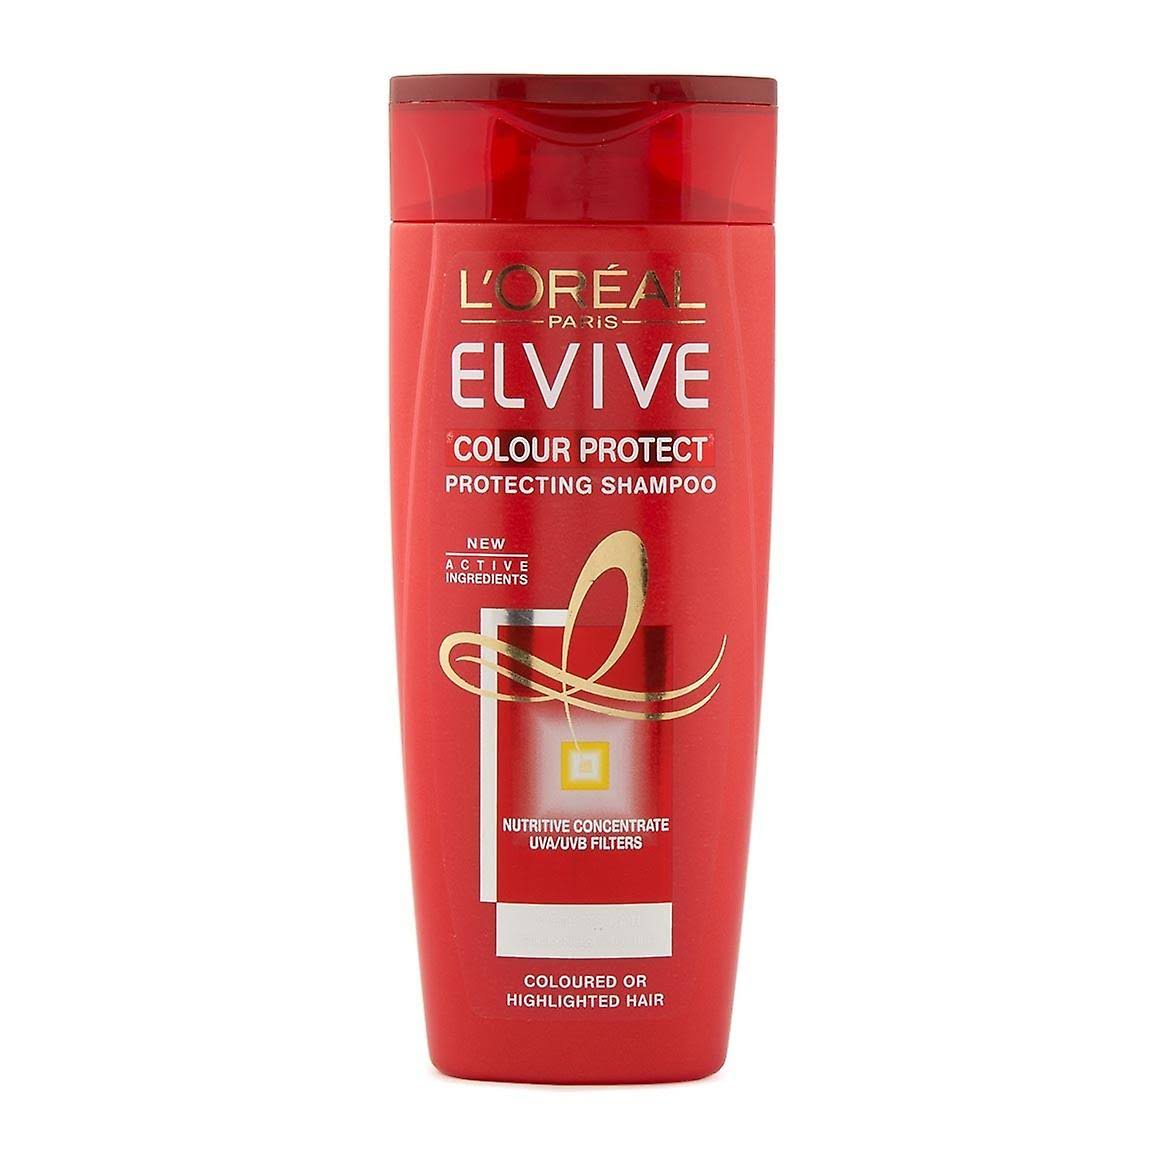 L'Oreal Elvive Colour Protect Shampoo 400ml